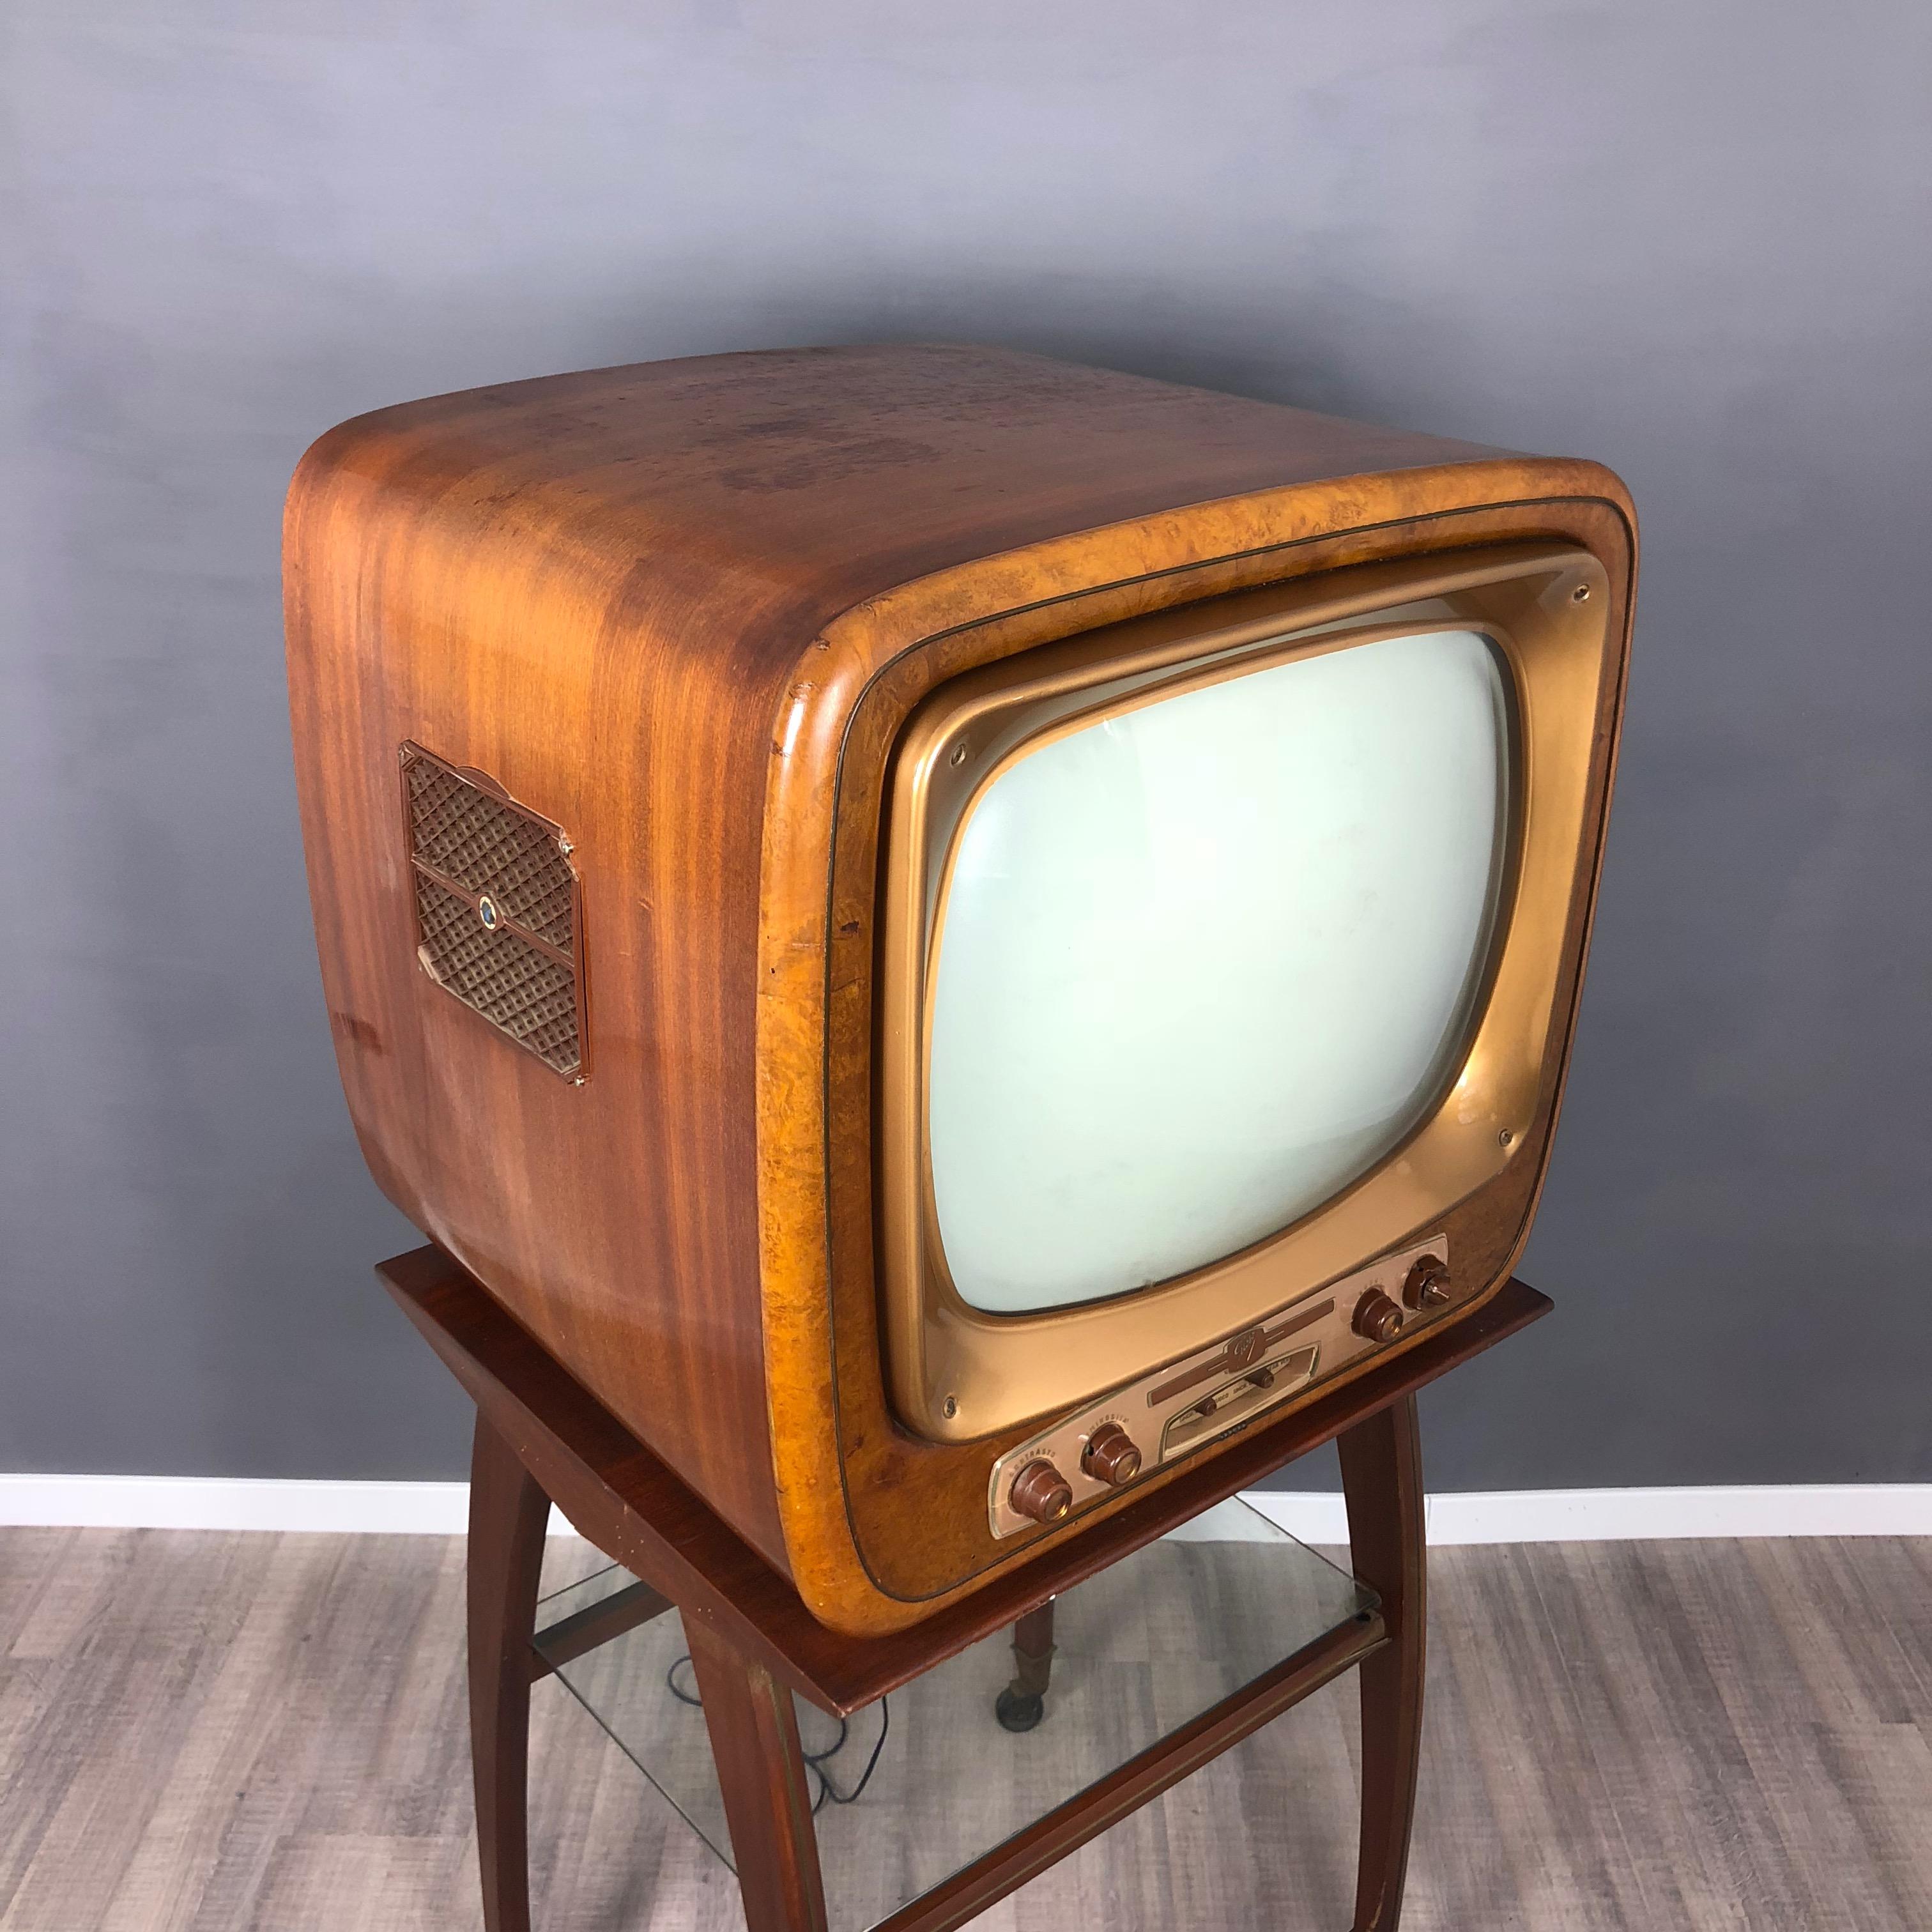 vintage tv for sale